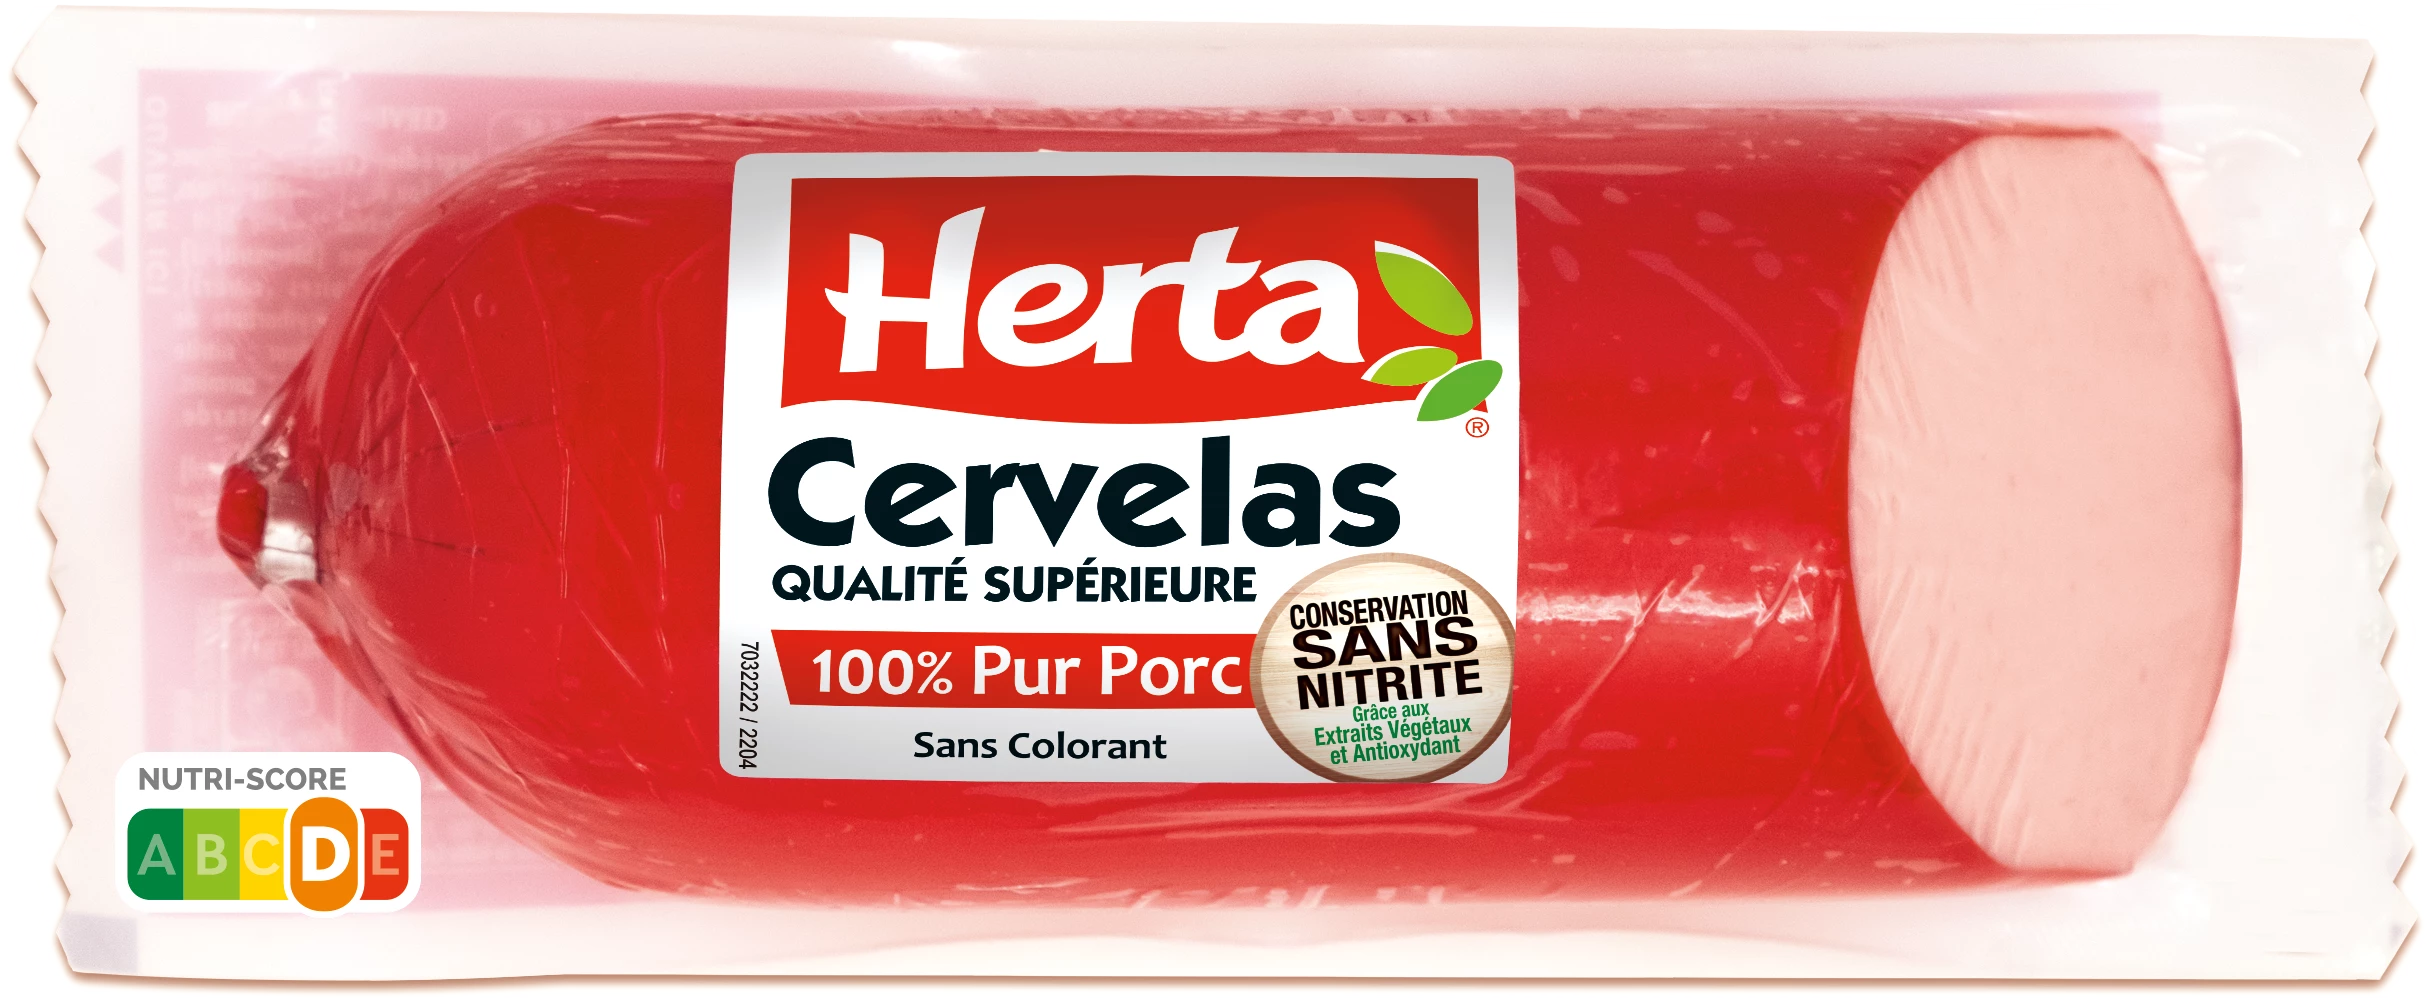 Xúc xích thịt lợn bảo quản Cervelas không chứa Nitrite, 400g - HERTA